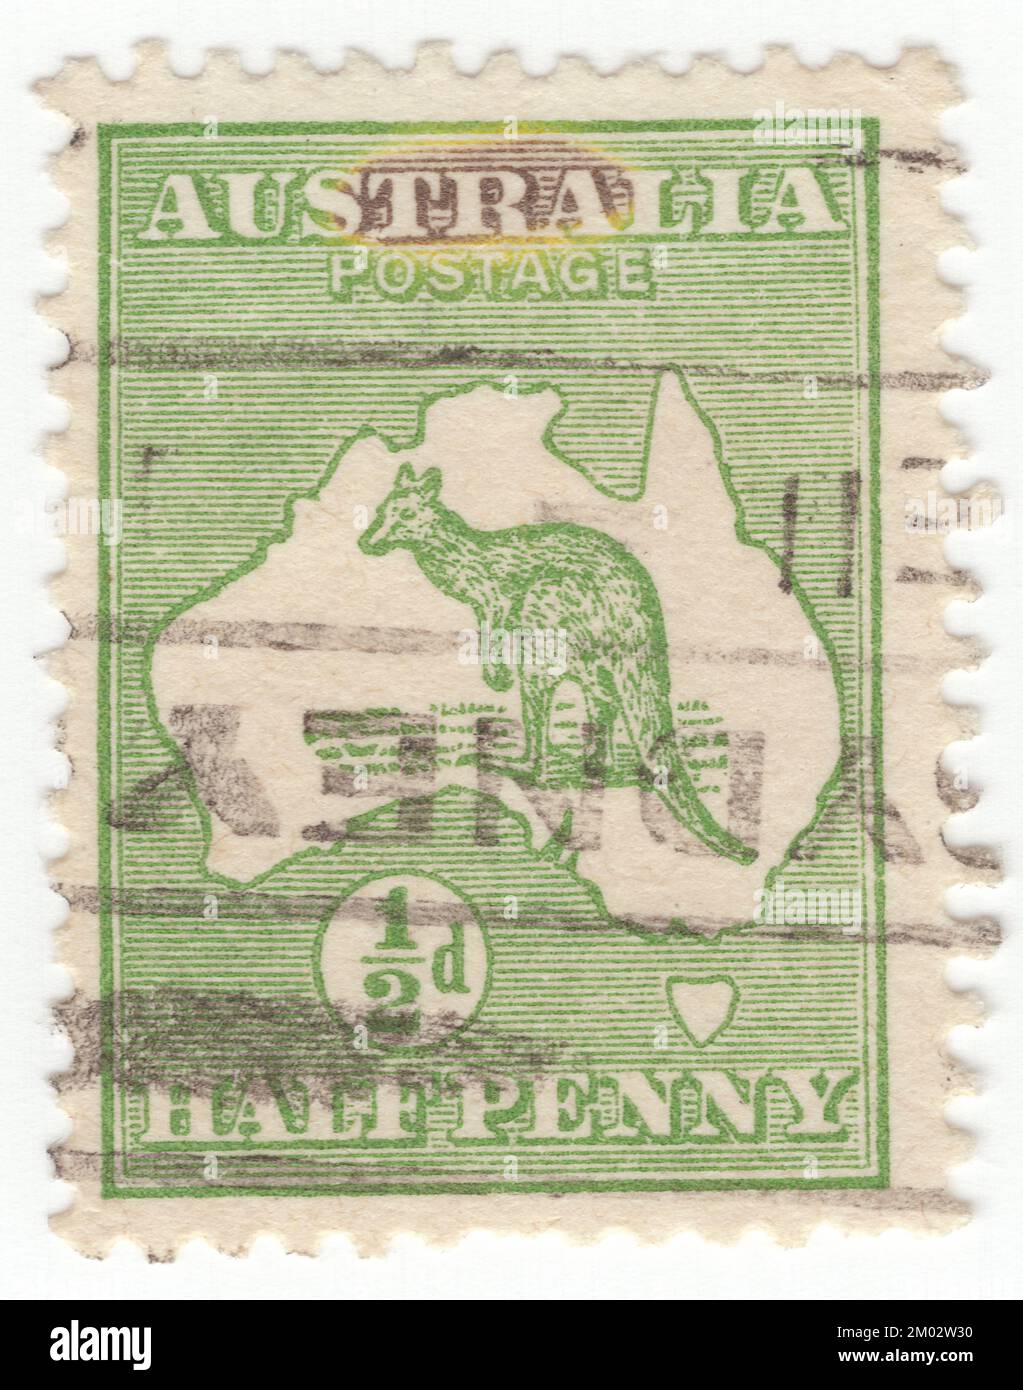 AUSTRALIE — 1913: Timbre-poste vert ½ pence représentant le kangourou et la carte de l'Australie. L'Australie est le continent habité le plus ancien, le plus plat et le plus sec, avec les sols les moins fertiles. C'est un pays megadiverse, et sa taille lui donne une grande variété de paysages et de climats, avec des déserts au centre, des forêts tropicales humides dans le nord-est, et des chaînes de montagnes dans le sud-est. Le kangourou est un symbole reconnaissable de l'Australie. Première émission de timbres-poste australiens. Le kangourou et l'émeu se trouvent sur les armoiries australiennes Banque D'Images